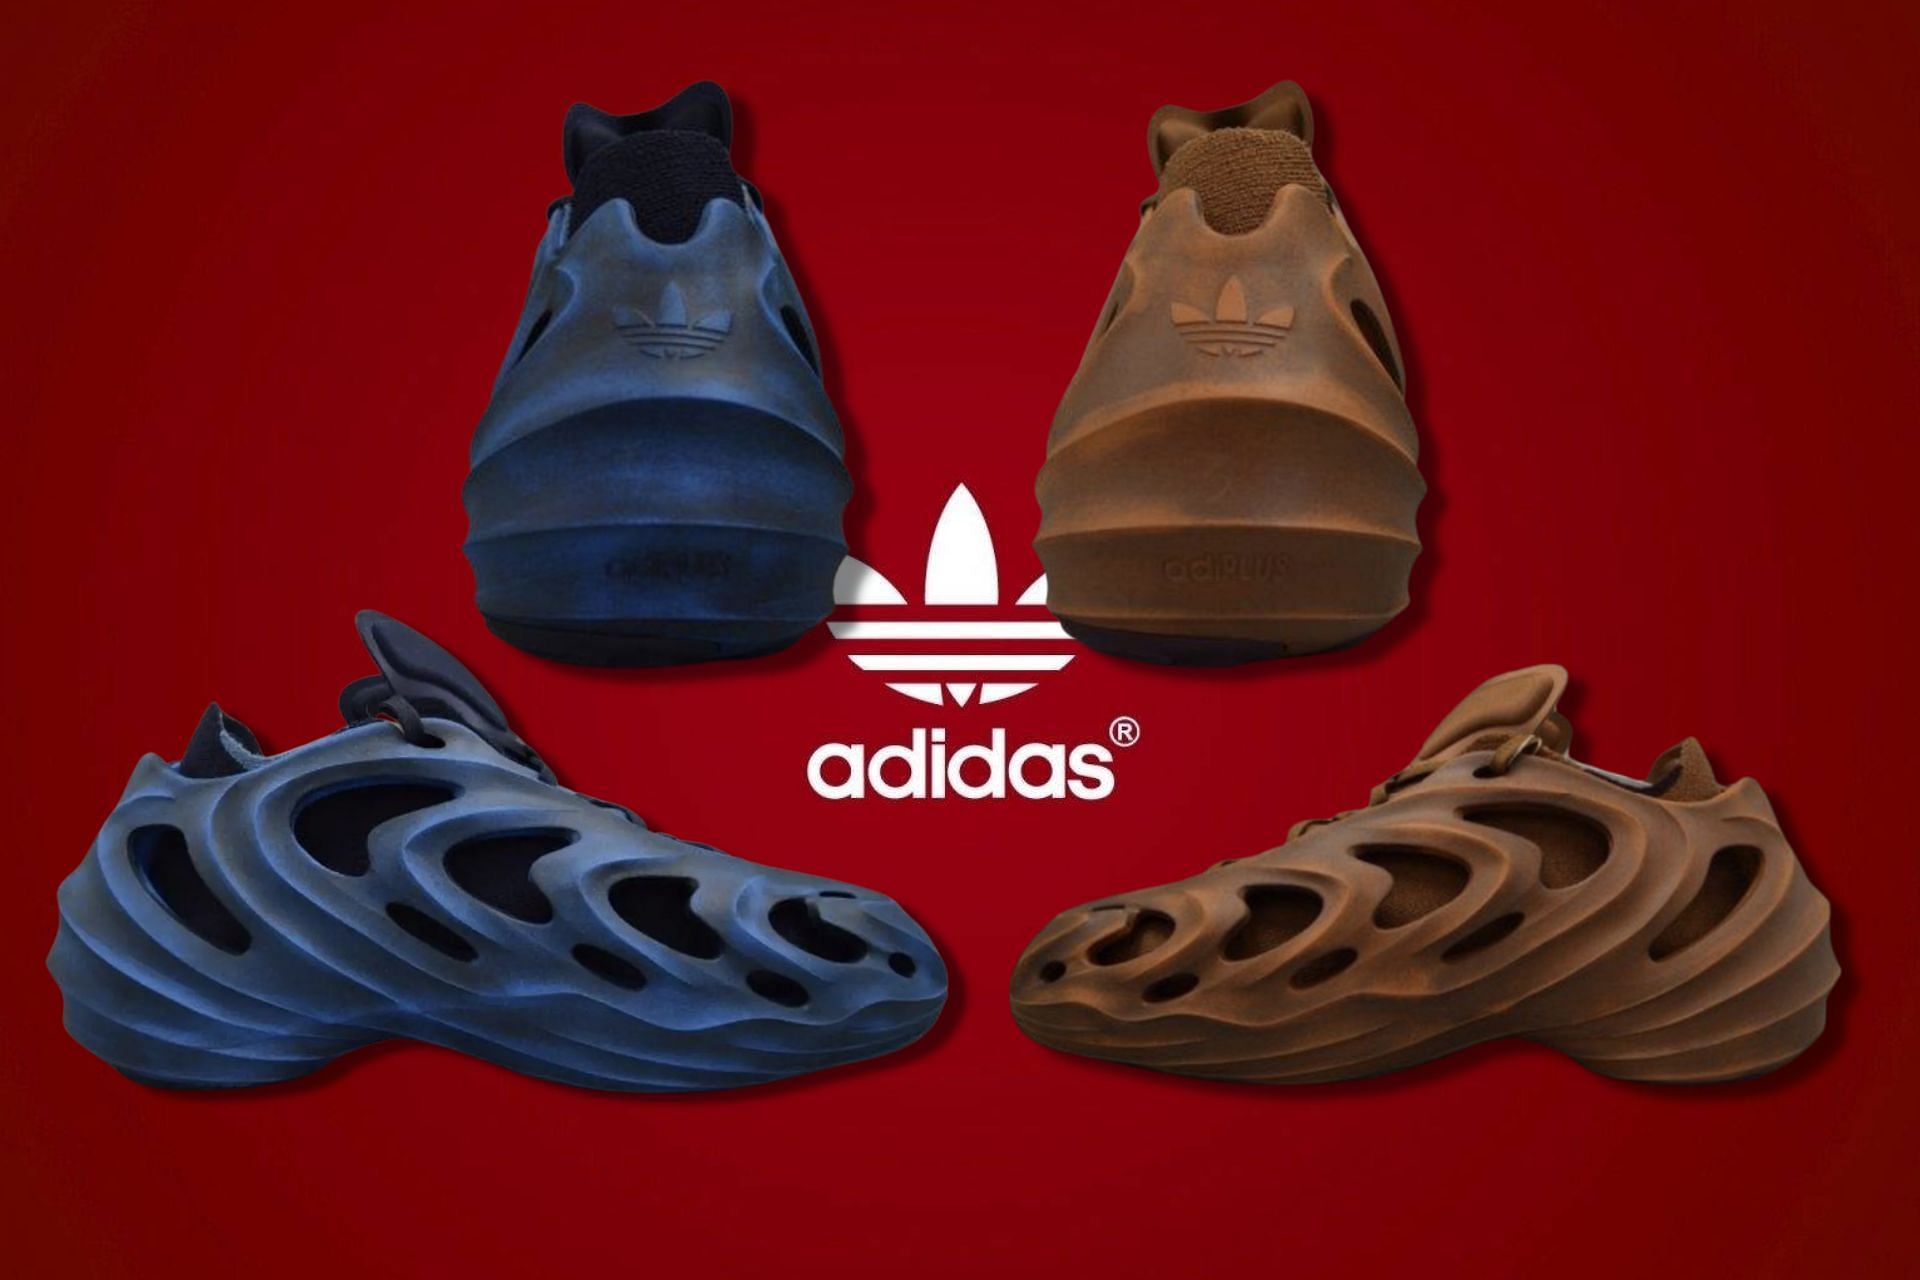 Adidas AdiFom Q sneakers (Image via Sportskeeda)